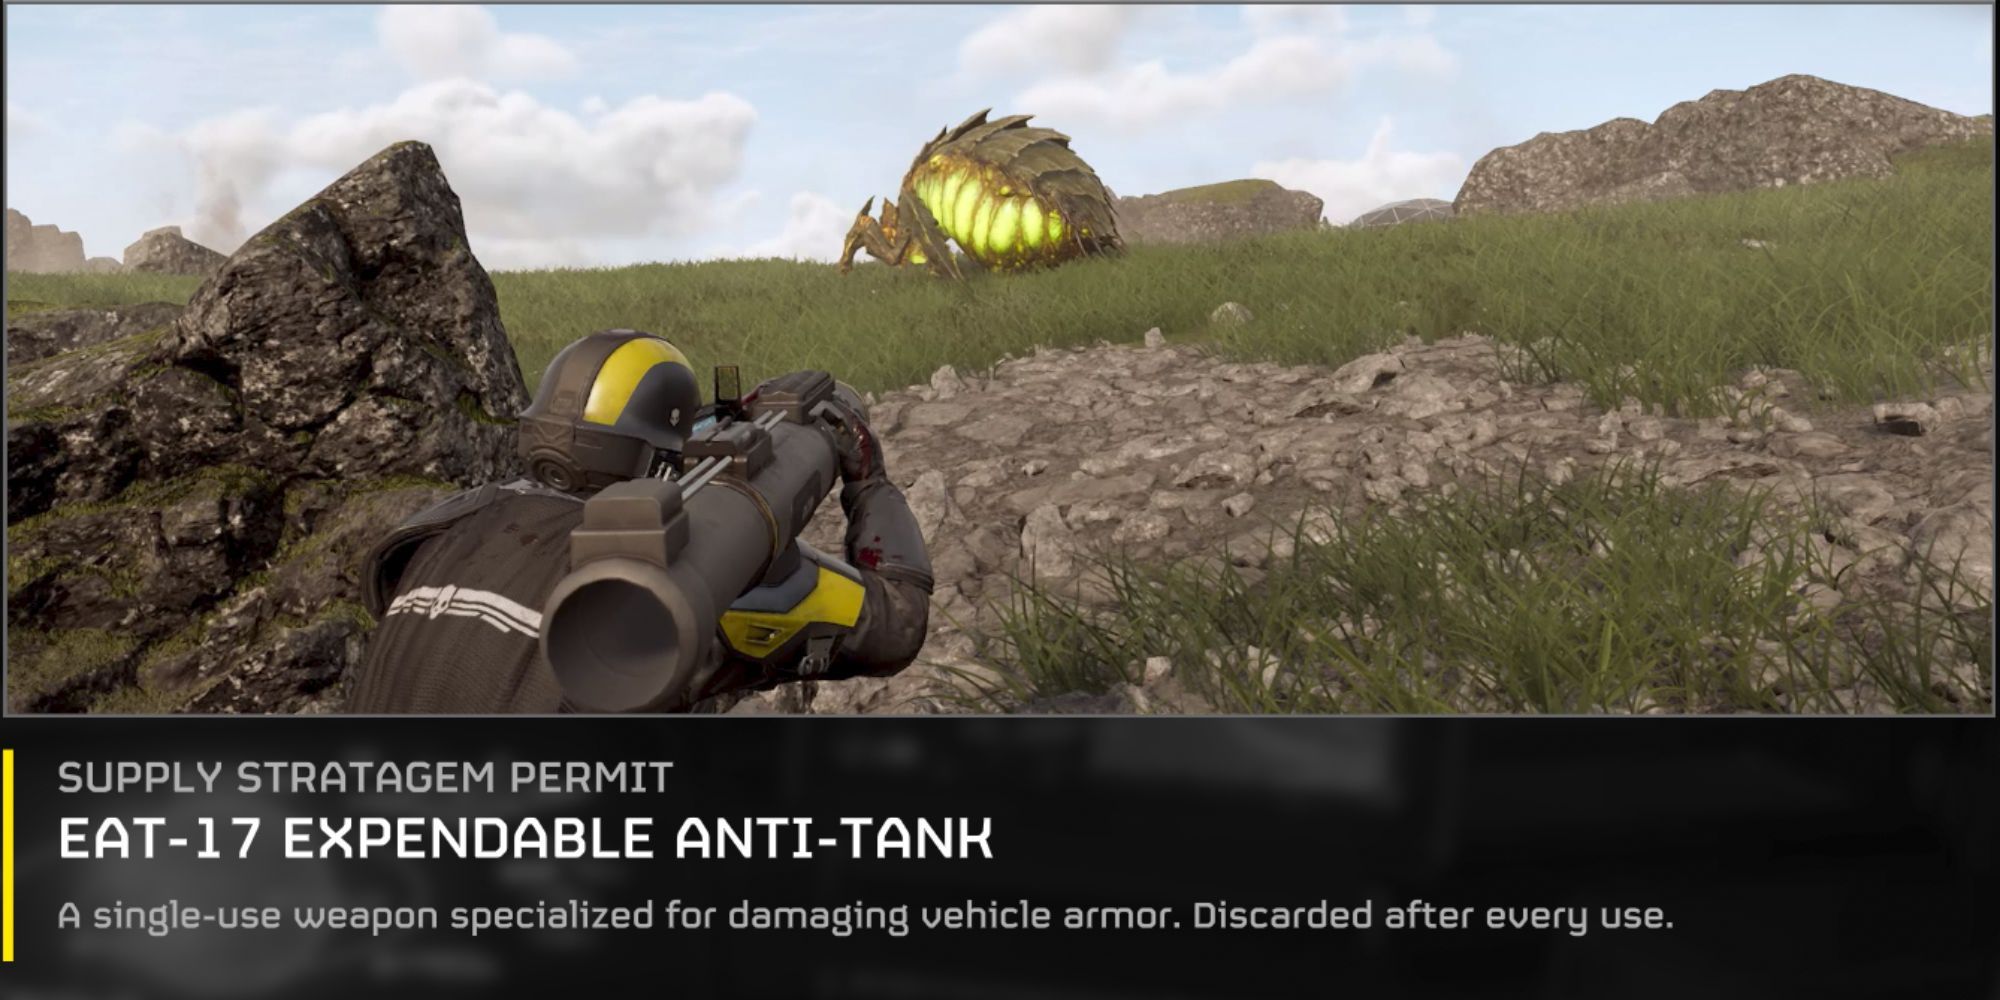 A página de permissão do estratagema anti-tanque dispensável